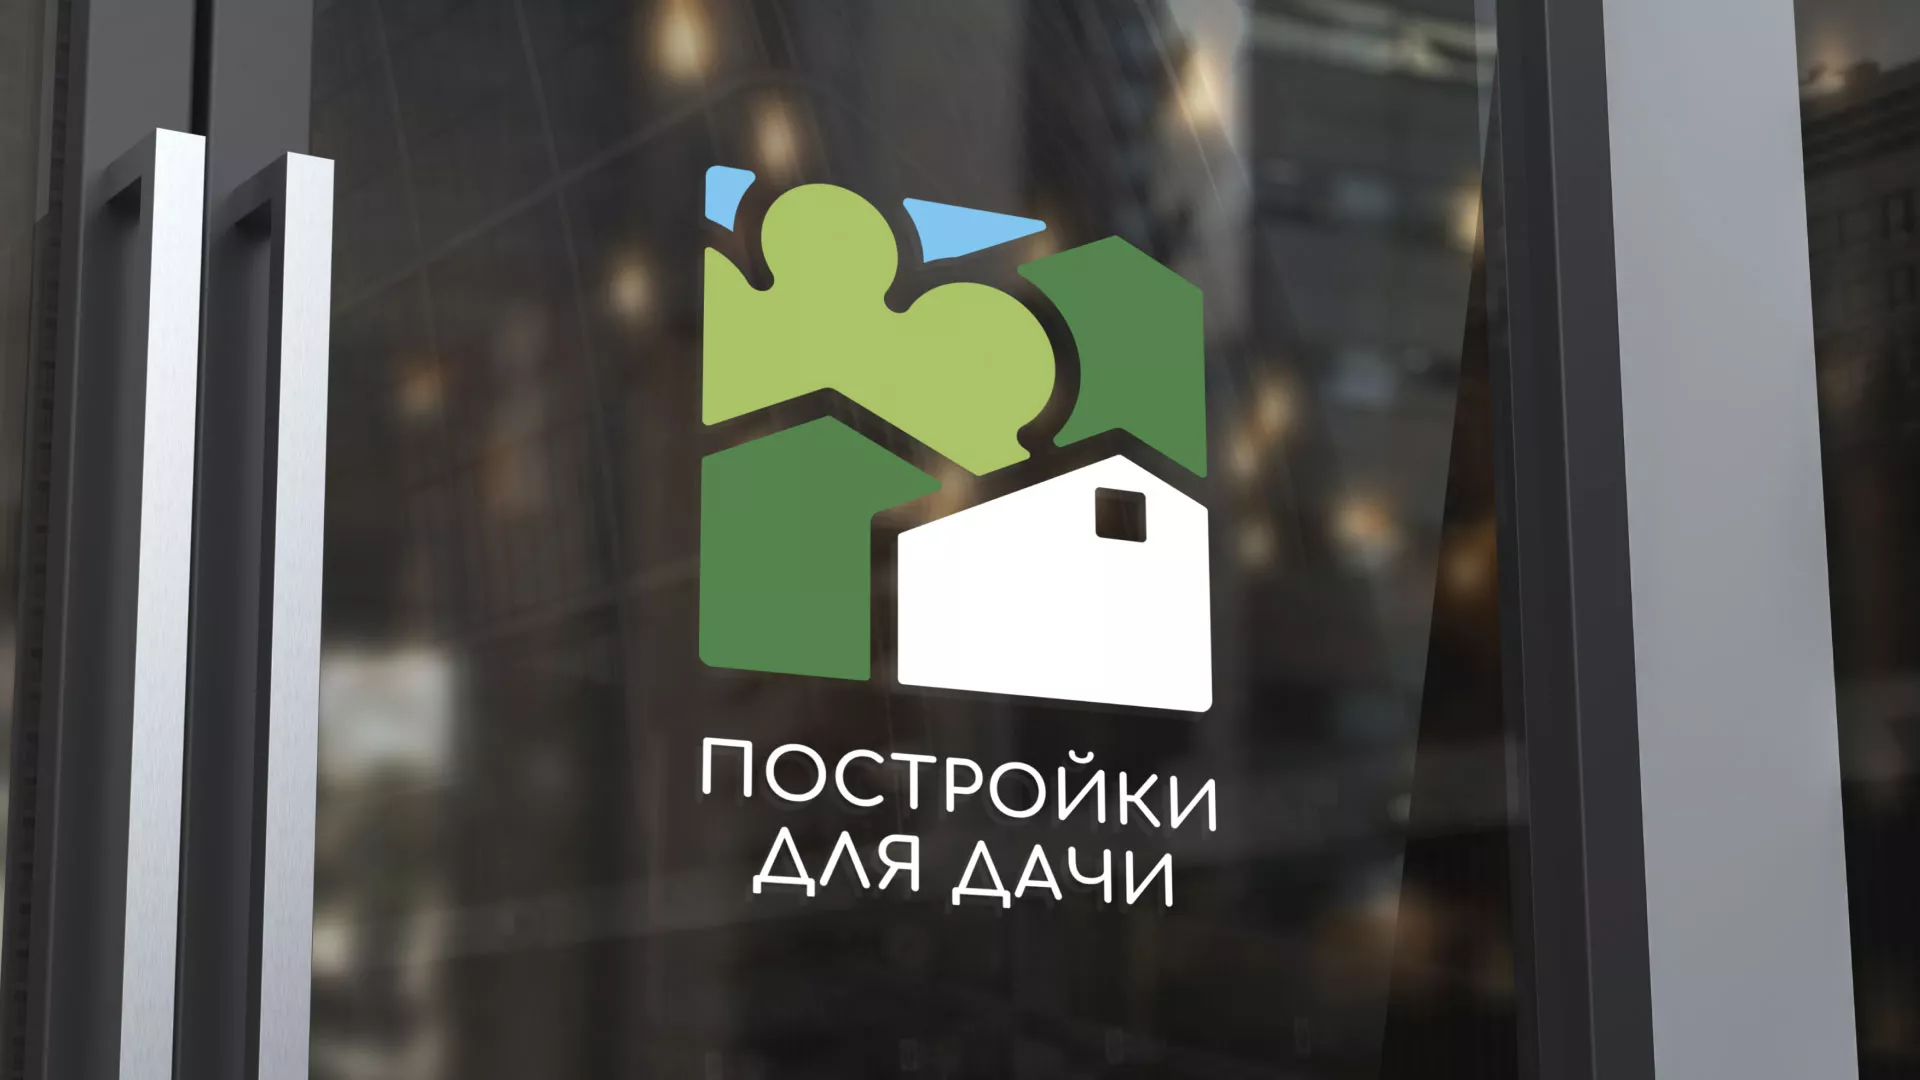 Разработка логотипа в Грозном для компании «Постройки для дачи»